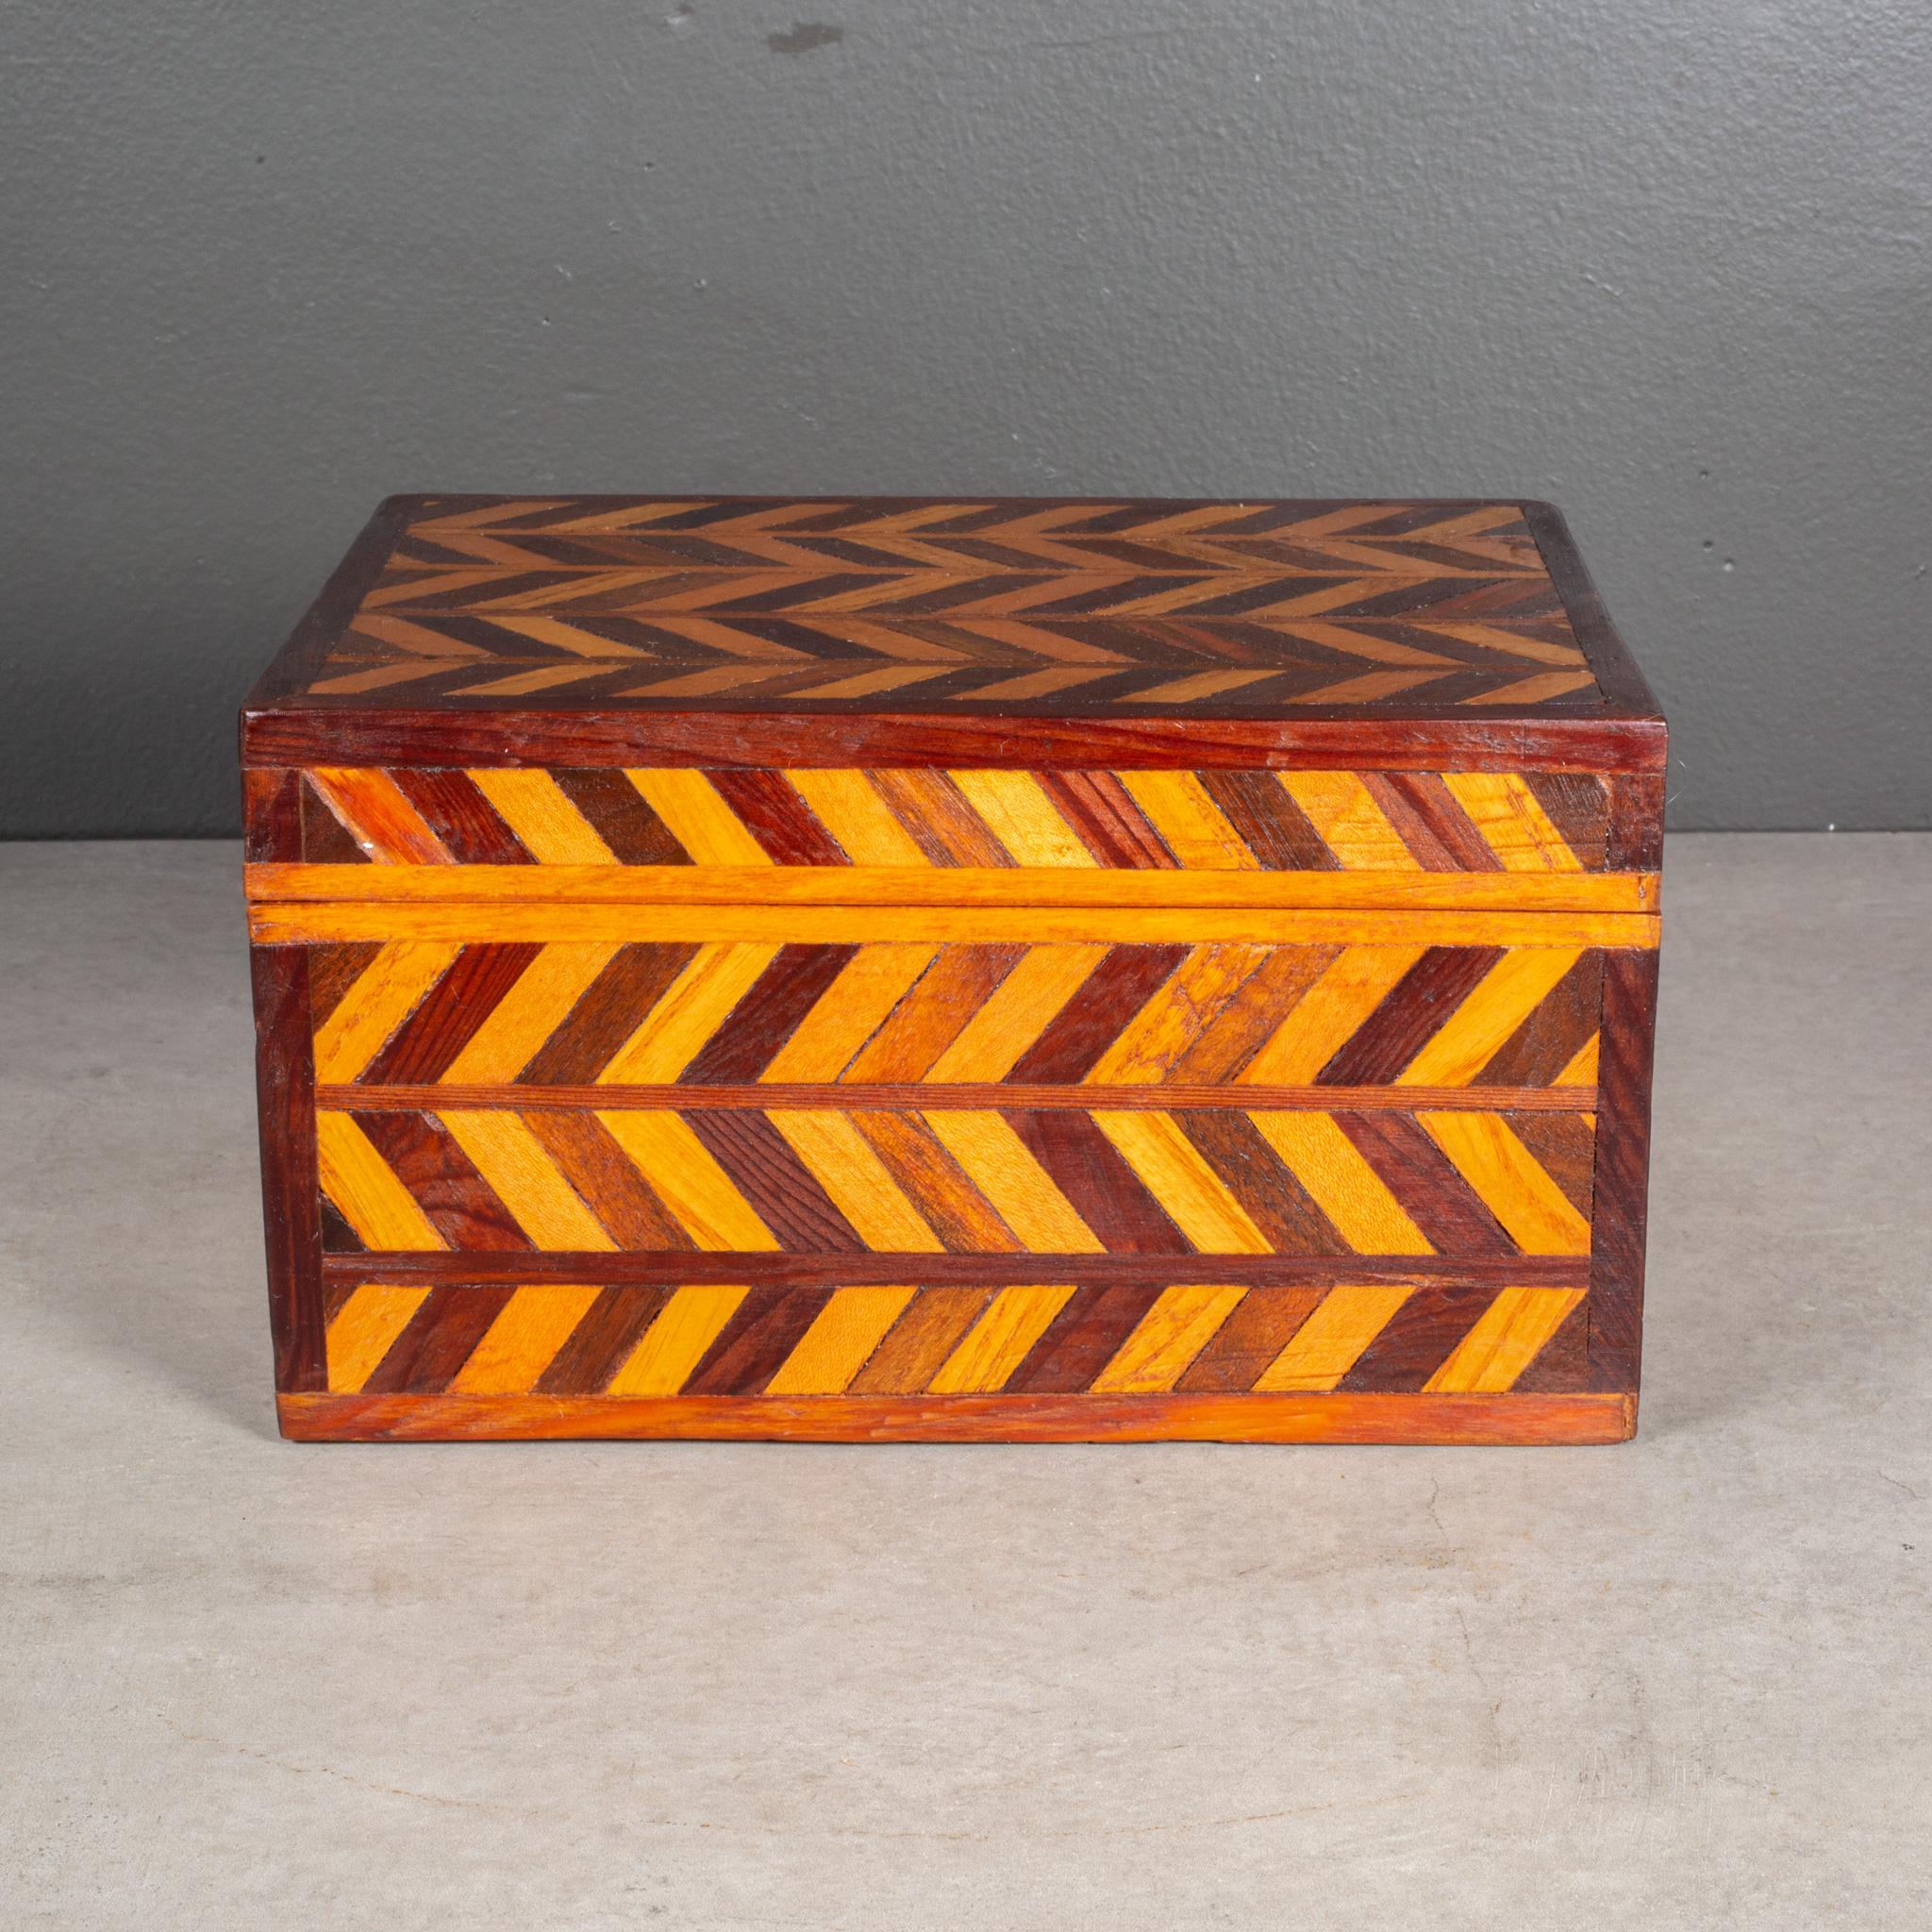 English Handmade Herringbone Inlay Wooden Box c.1940